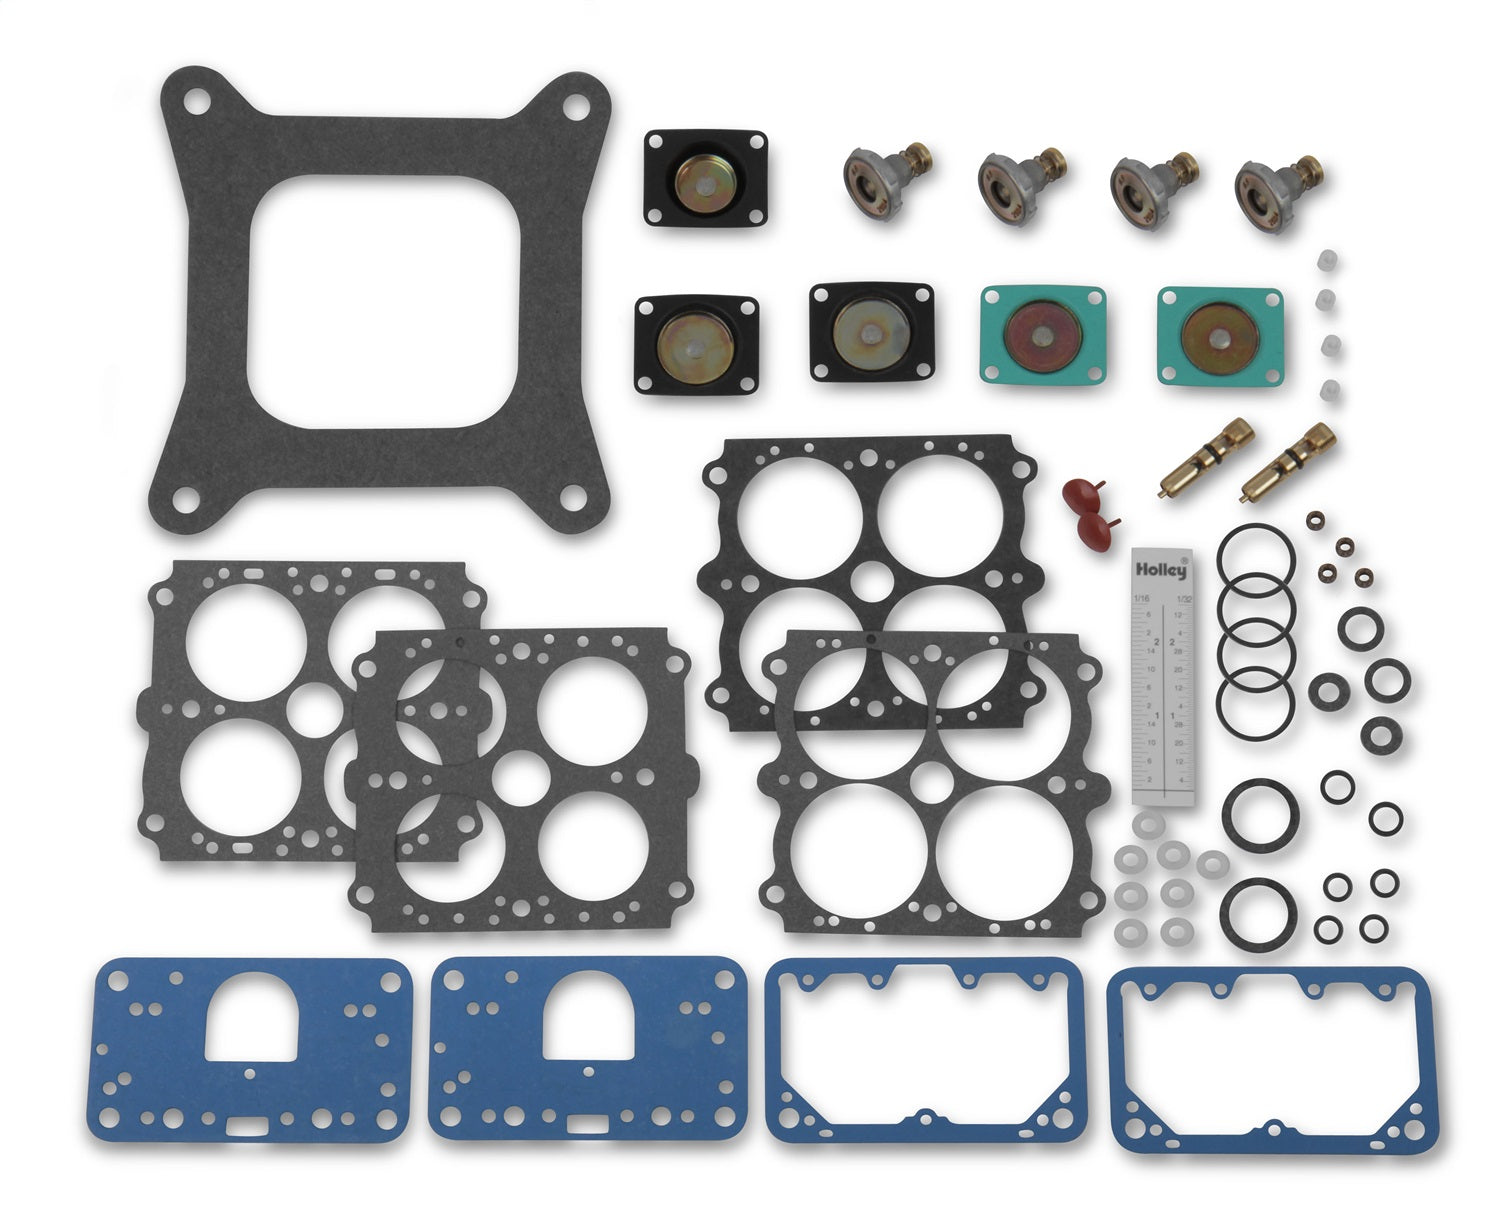 Fast Kit Carburetor Rebuild Kit; For Model Number 4150; 950 cfm.;